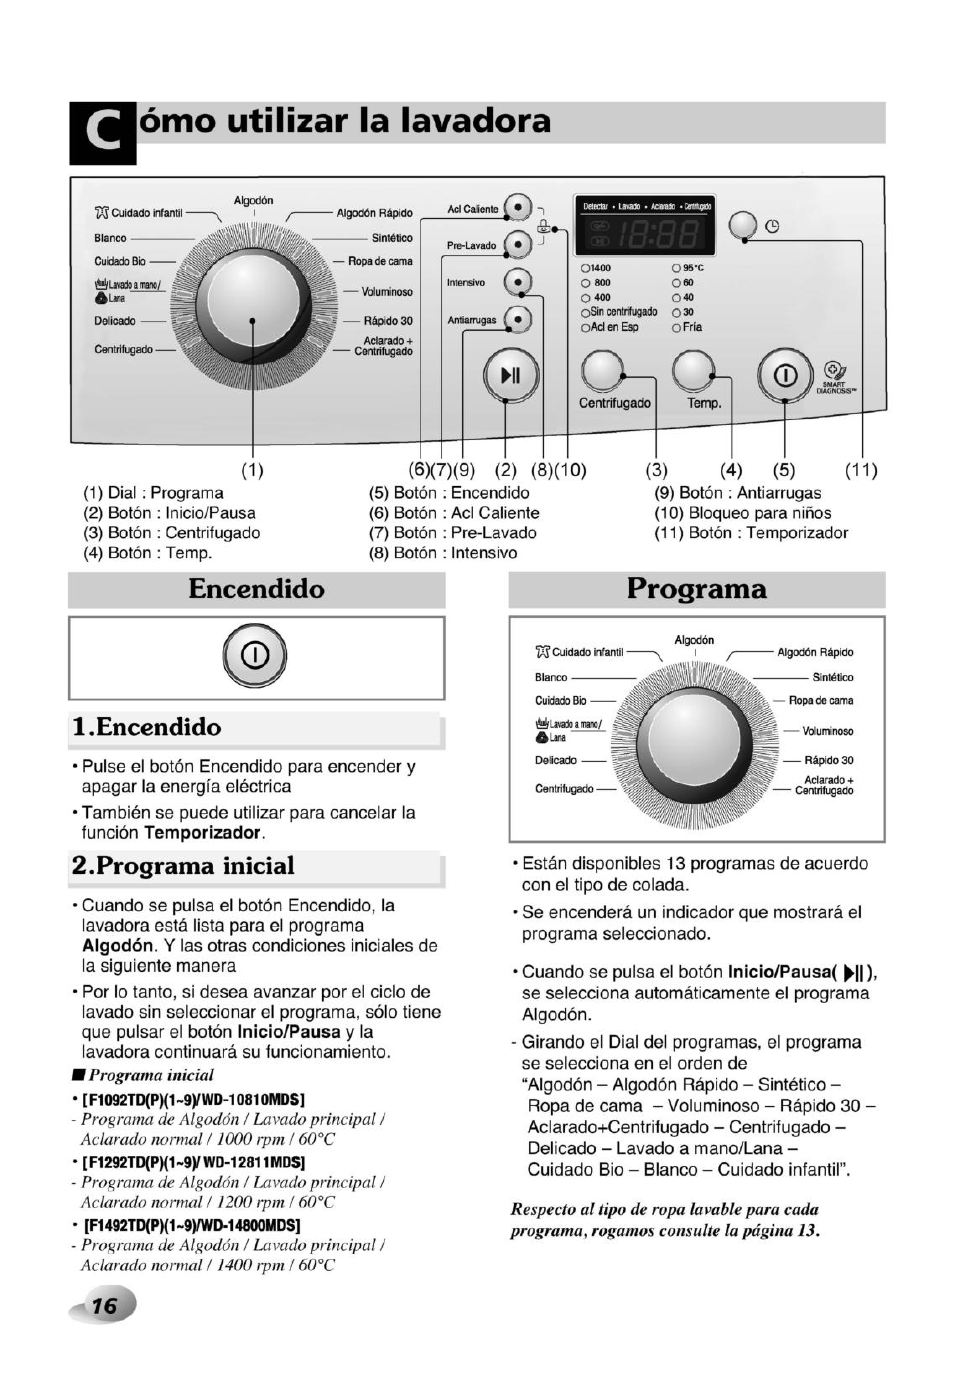 Encendido, Programa inicial, Ómo utilizar la lavadora LG WD-10810MDS Manual | Página 16 / 36 Original